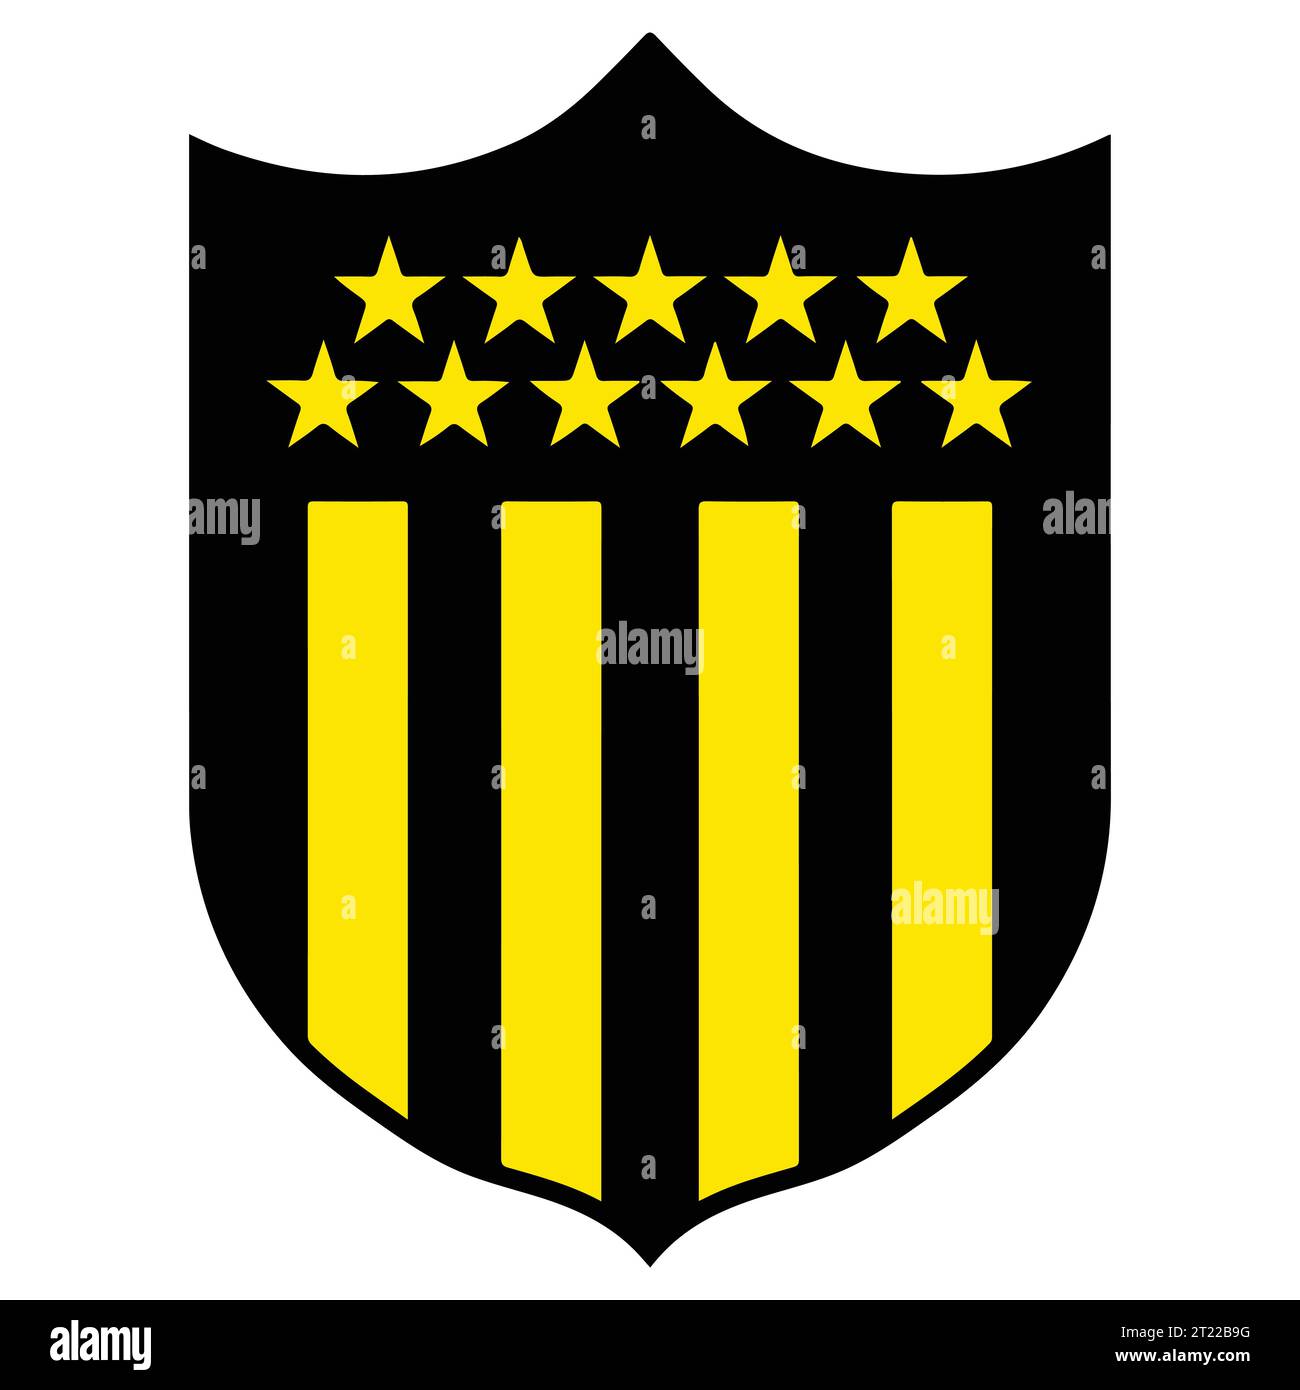 Club Atletico Penarol Buntes Logo uruguayisches professionelles Fußball-Ligasystem, Vektor-Illustration abstraktes Bild Stock Vektor